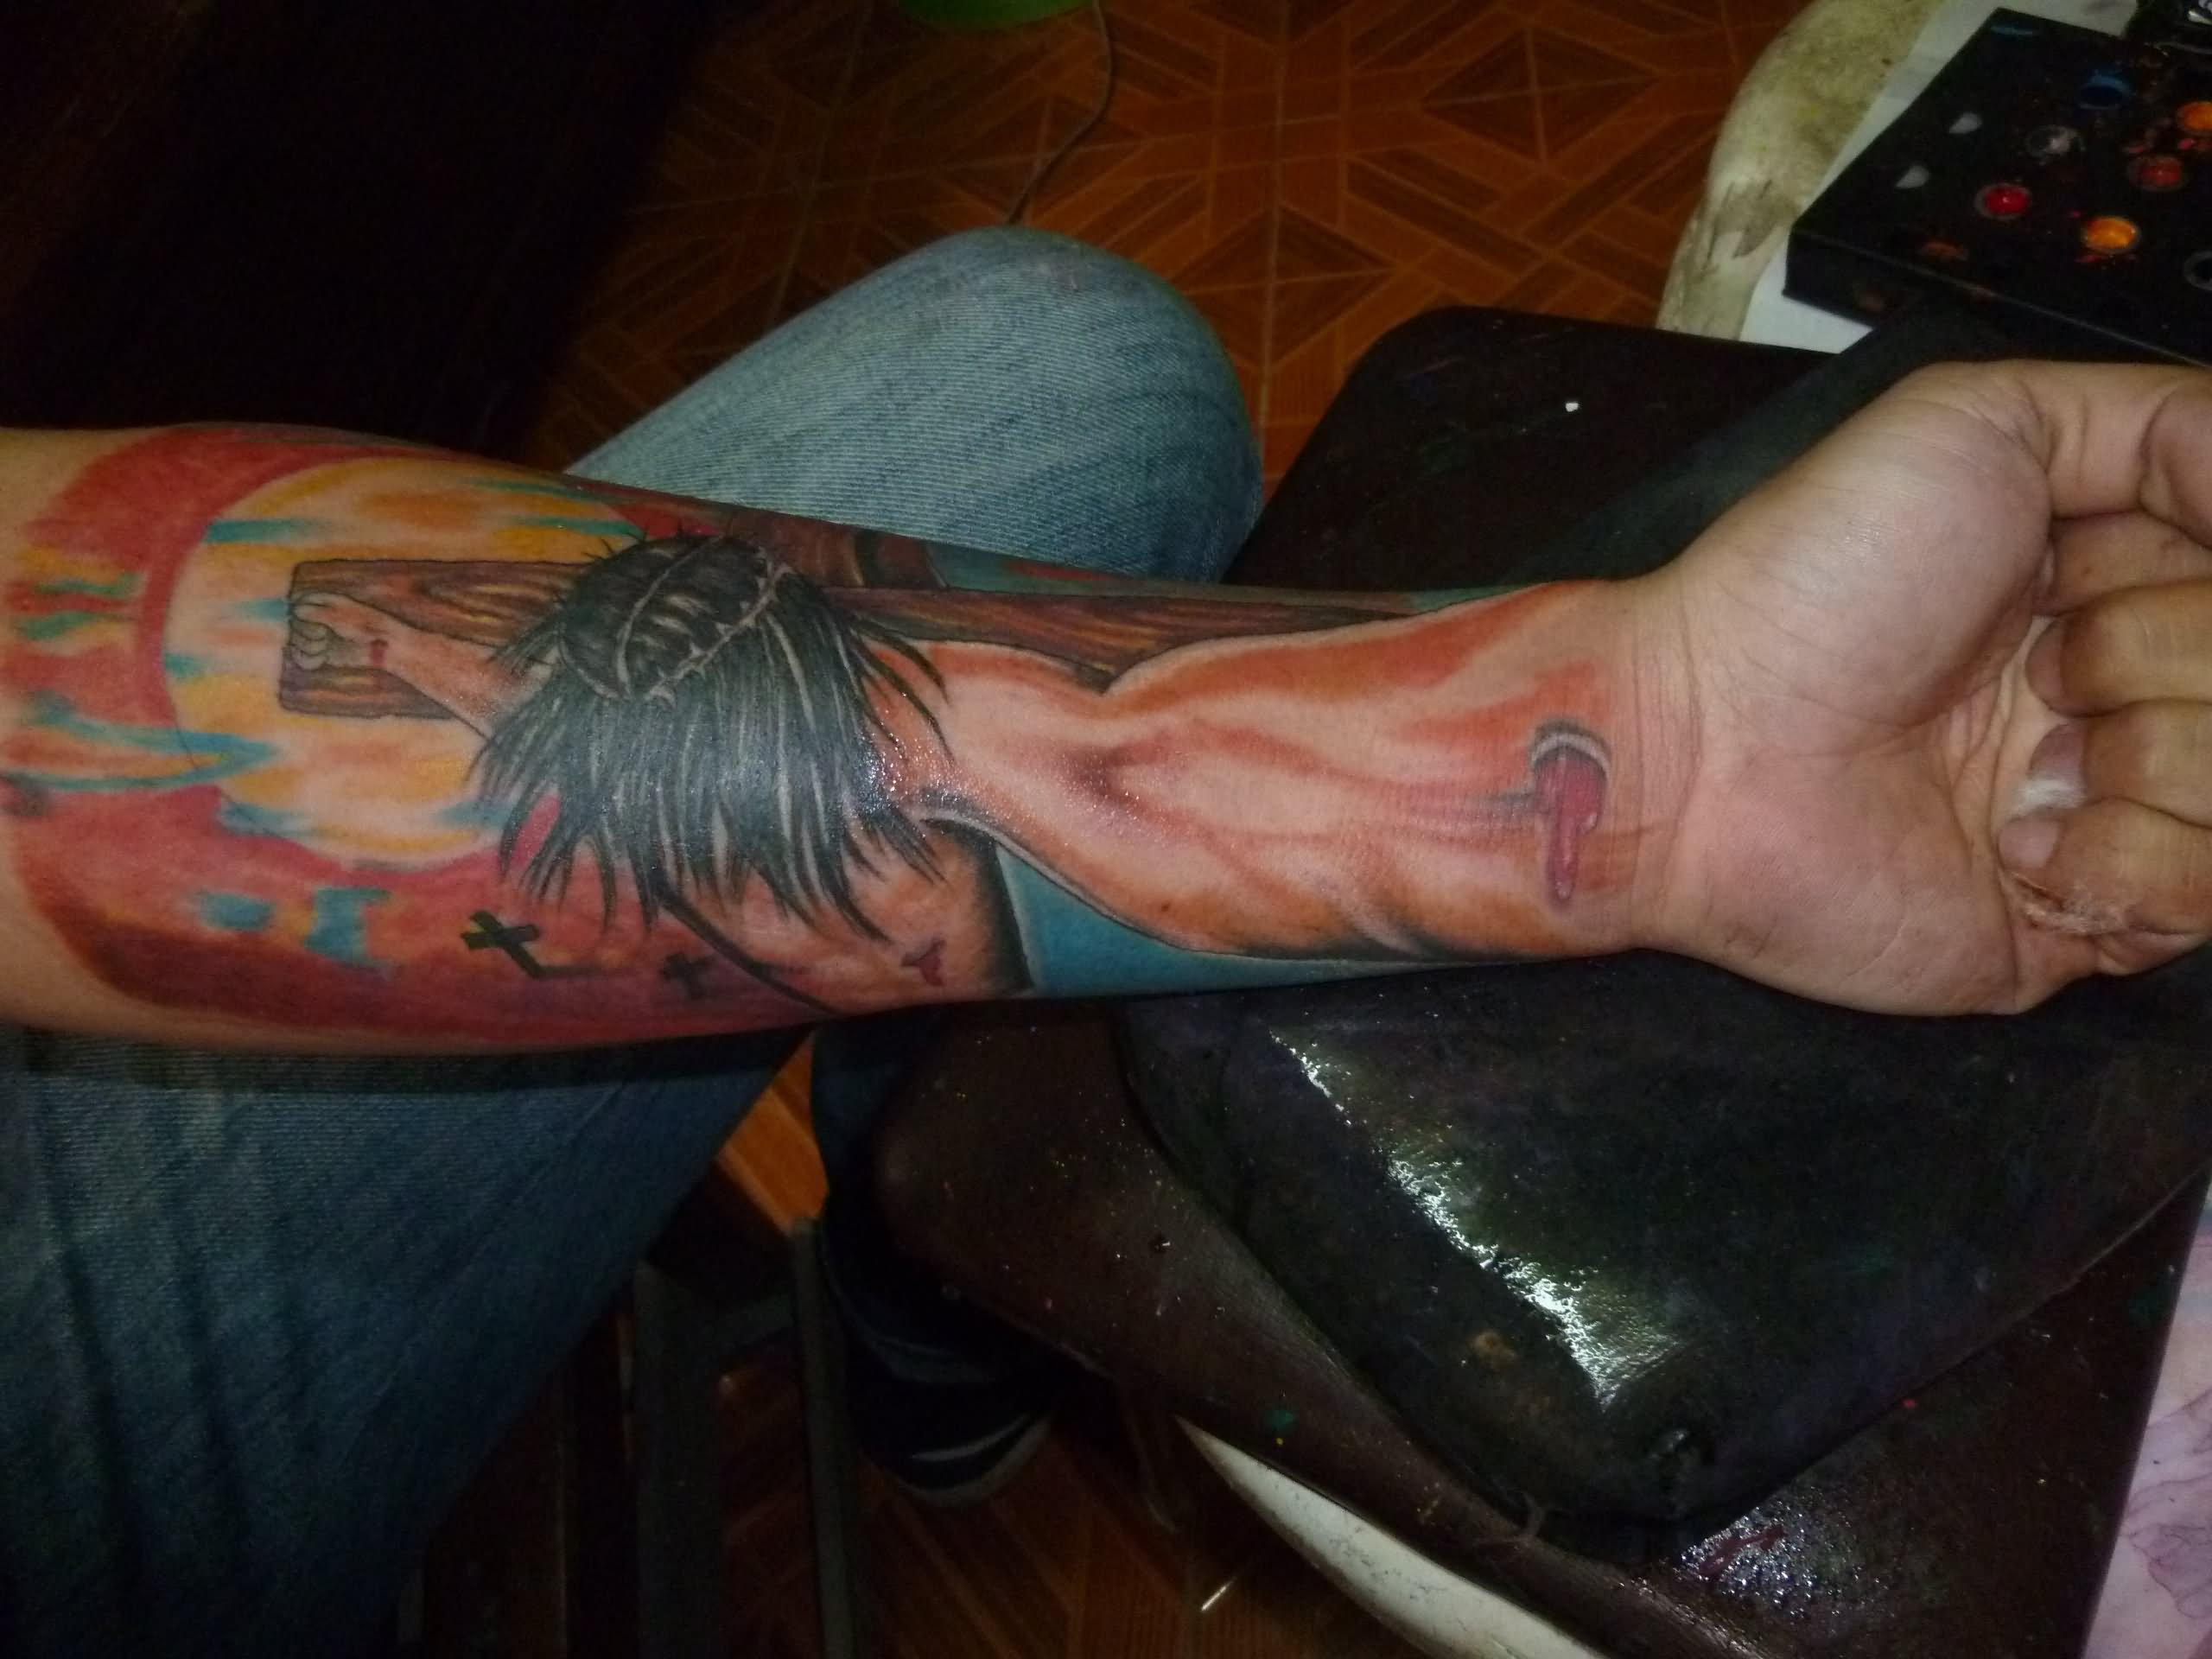 3. Jesus Arm Sleeve Tattoo - wide 8